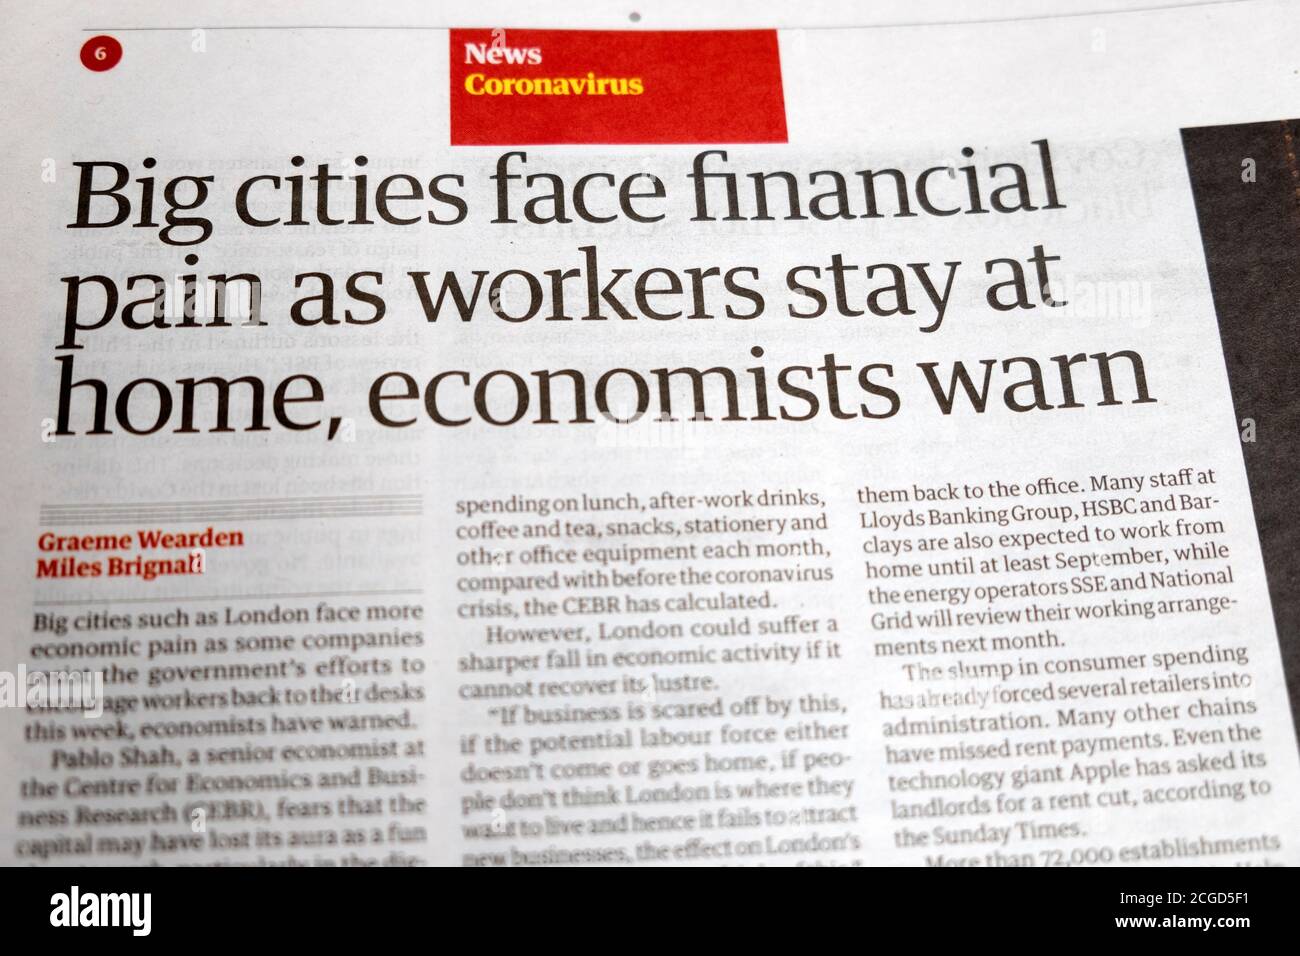 "Große Städte stehen vor finanziellen Schmerzen, wenn Arbeiter zu Hause bleiben, warnen Ökonomen" Coronavirus-Nachrichten in der Zeitung Guardian Schlagzeile 2020 London England Großbritannien Stockfoto